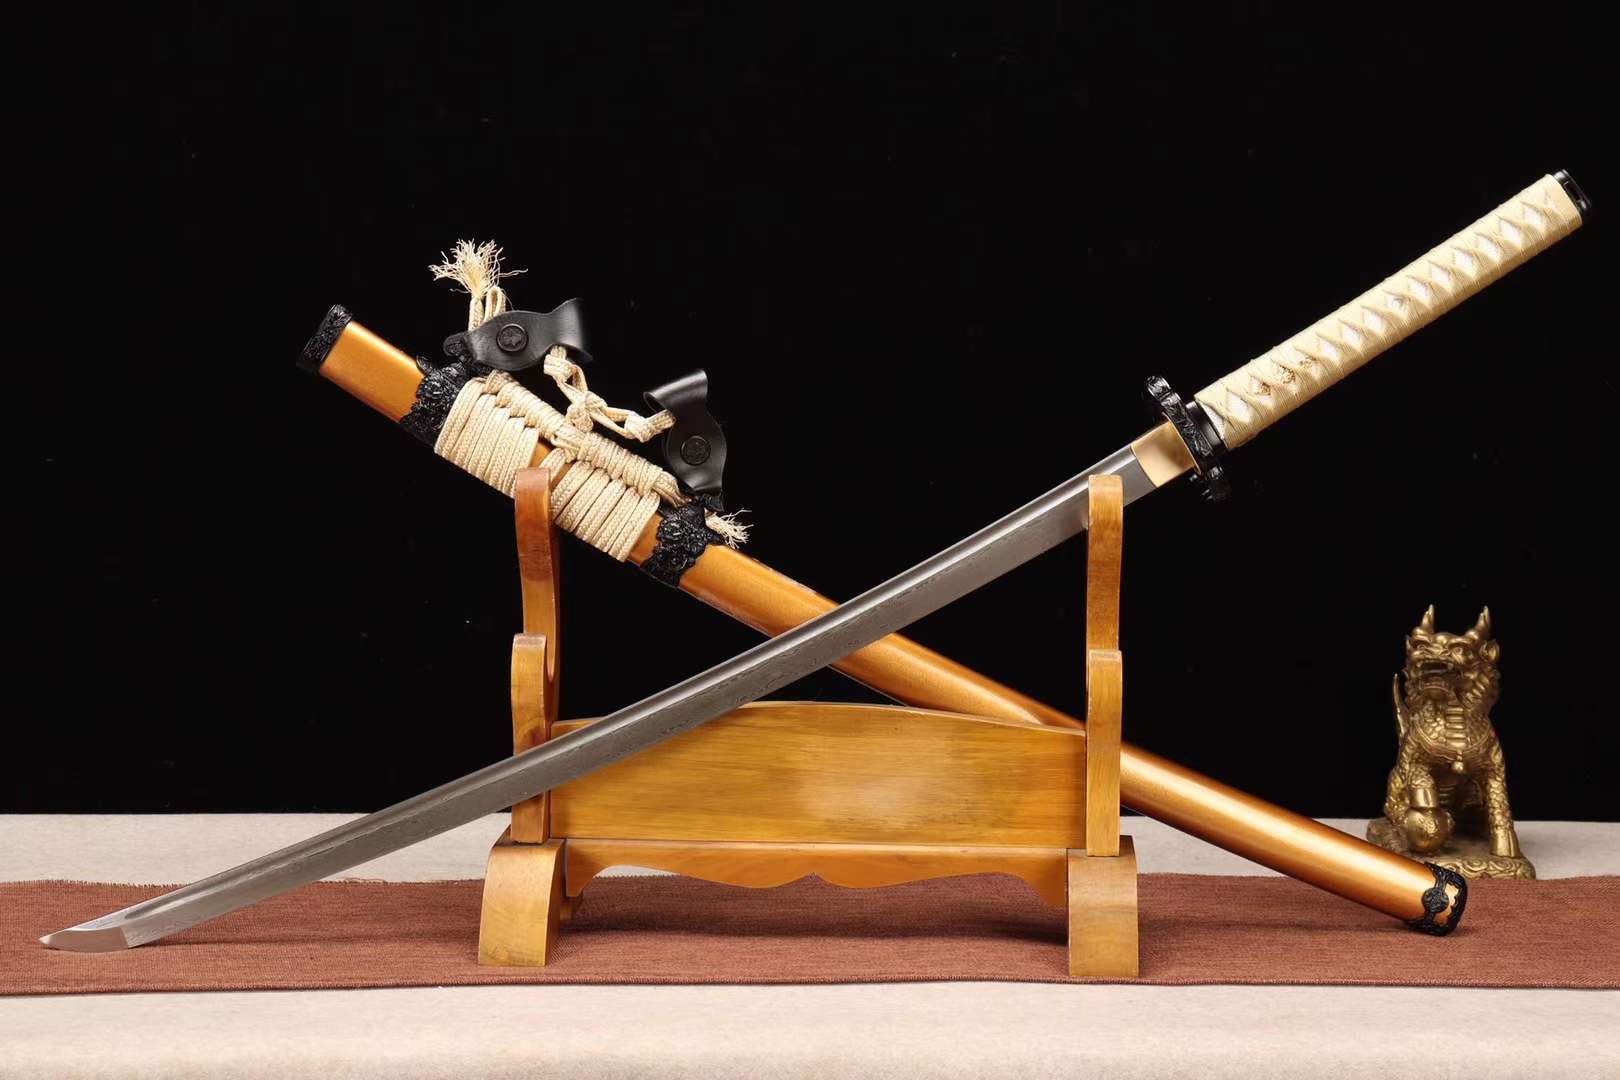 Samurai sword,Damascus Folding Steel Sword Katana,T8 Folding Steel Japanese Sword,Dragon Sword loveyitadj